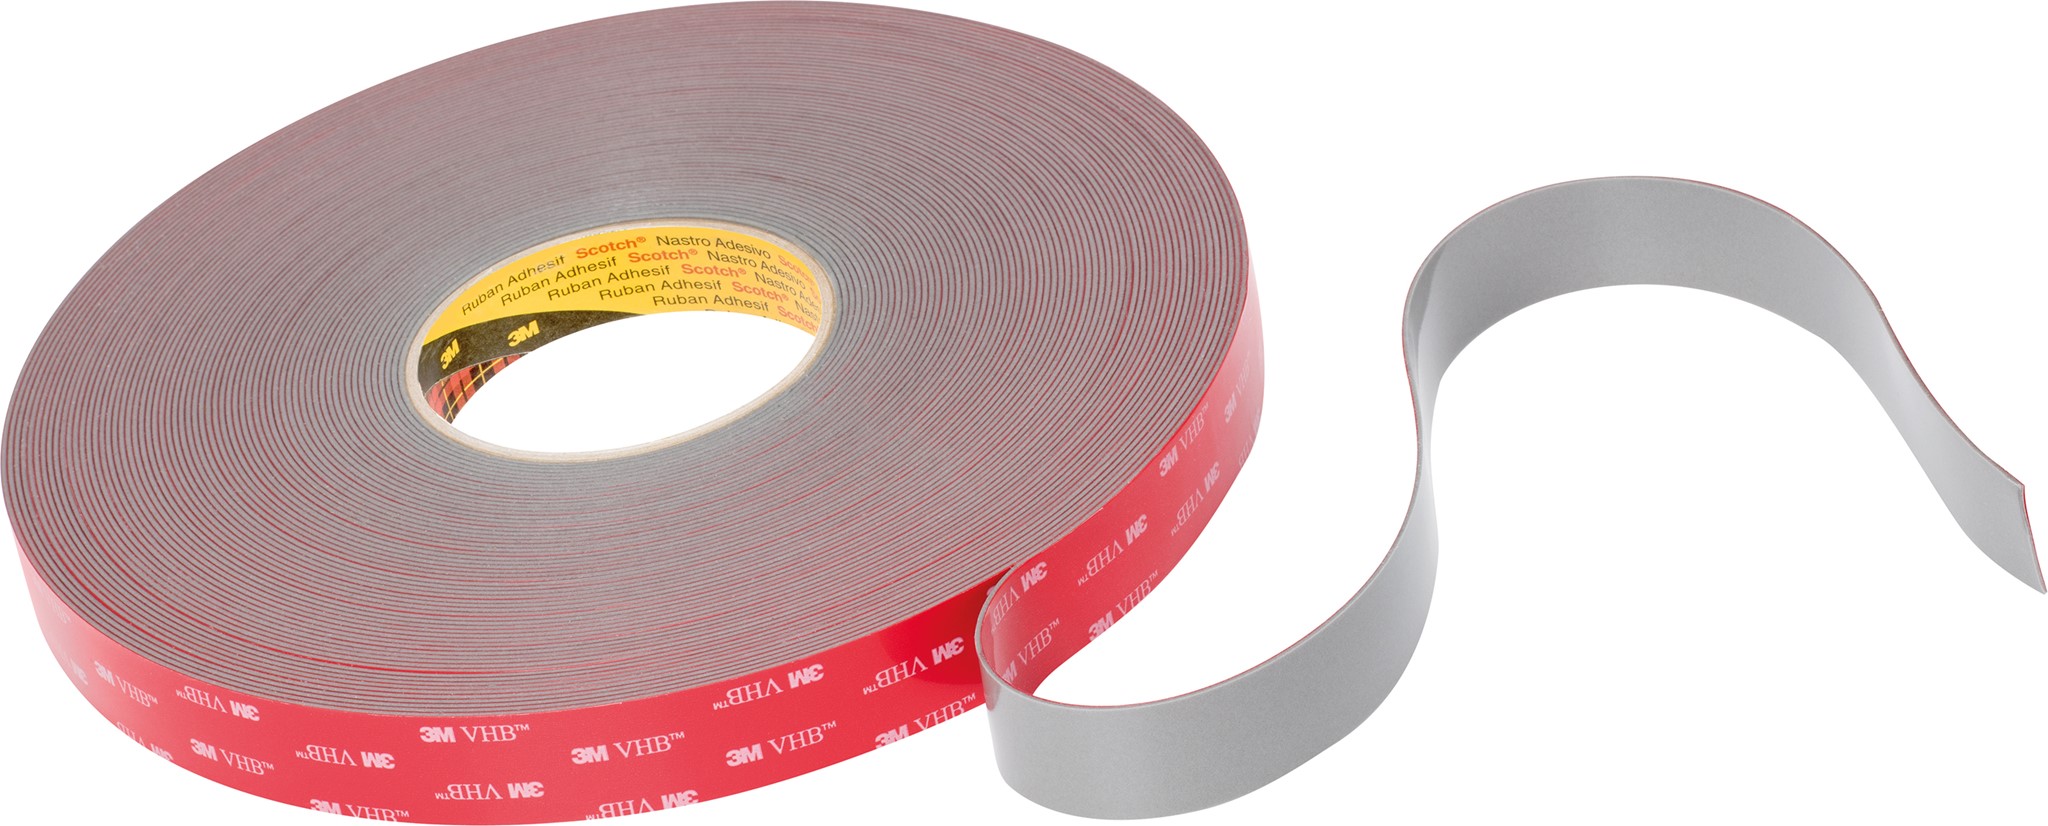 Picture of 3M VHB Tape GPH-110GF grau, 12mm x 33m, 1.1mm